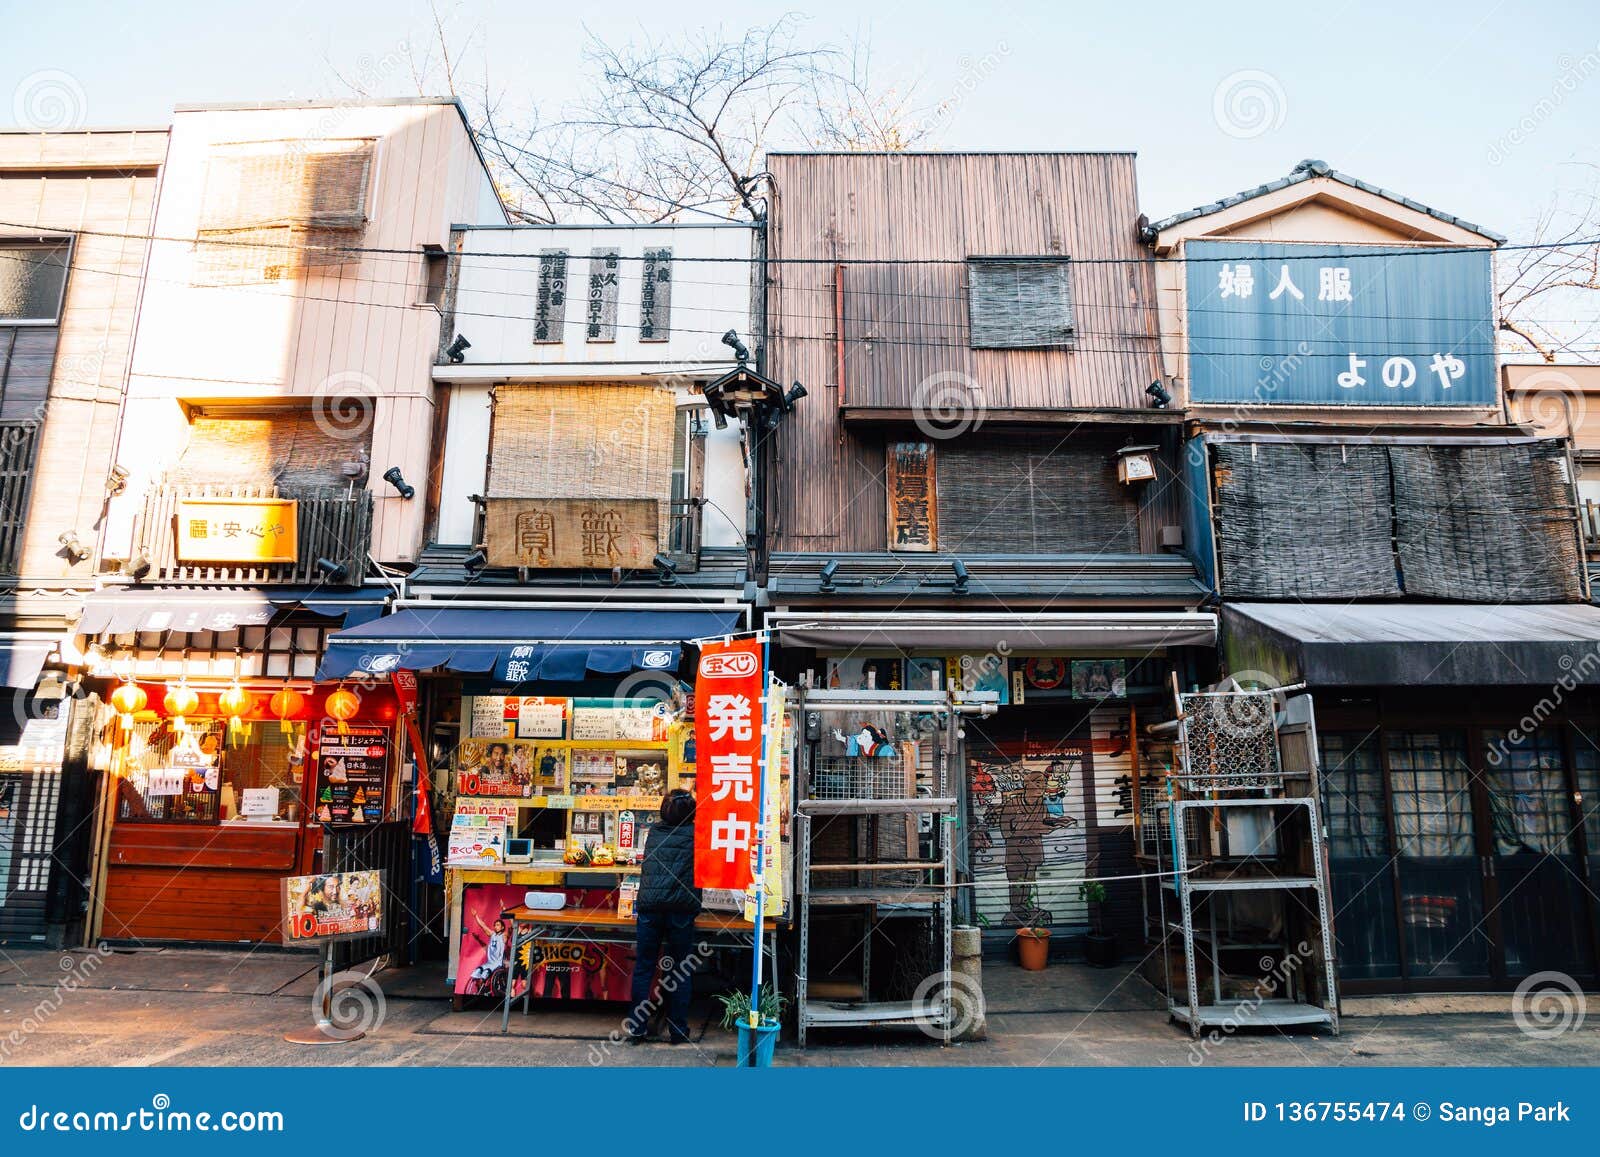 日本独有的“商店街”文化，教你如何像当地人一样逛街！_巢鸭